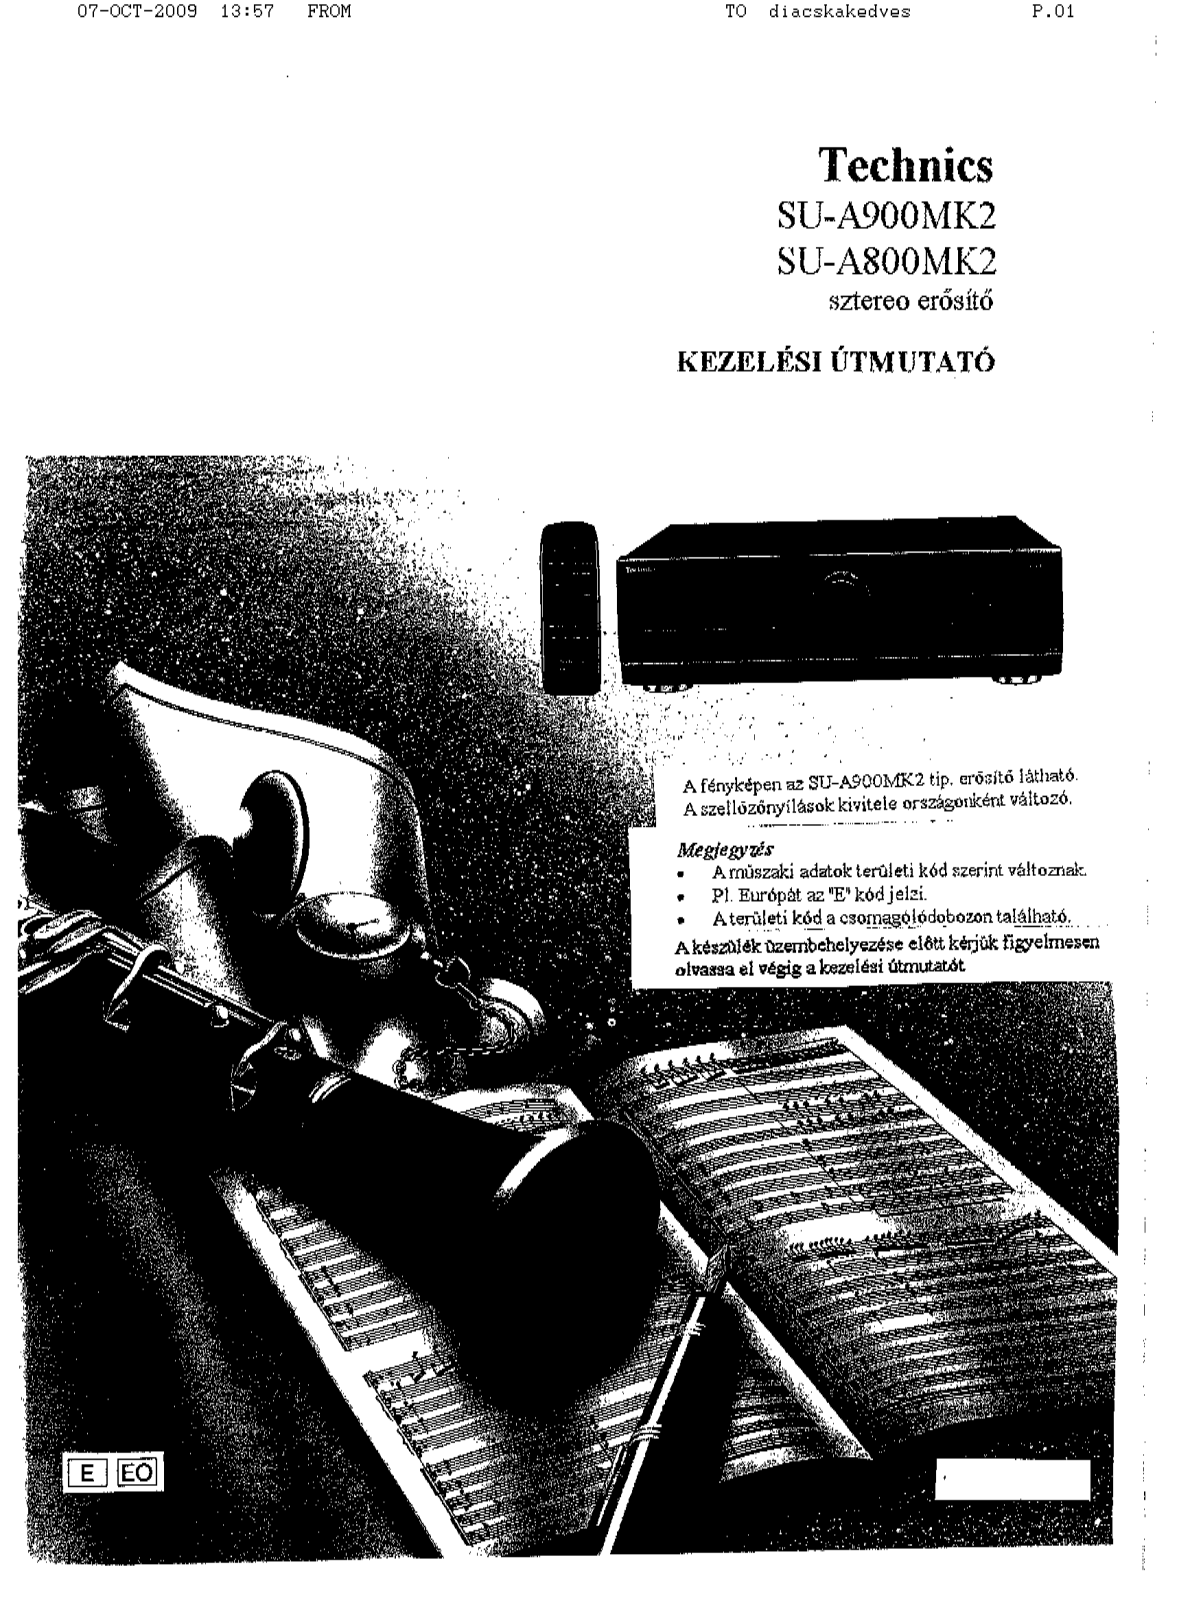 Technics SU-A800MK2, SU-A900MK2 User Manual